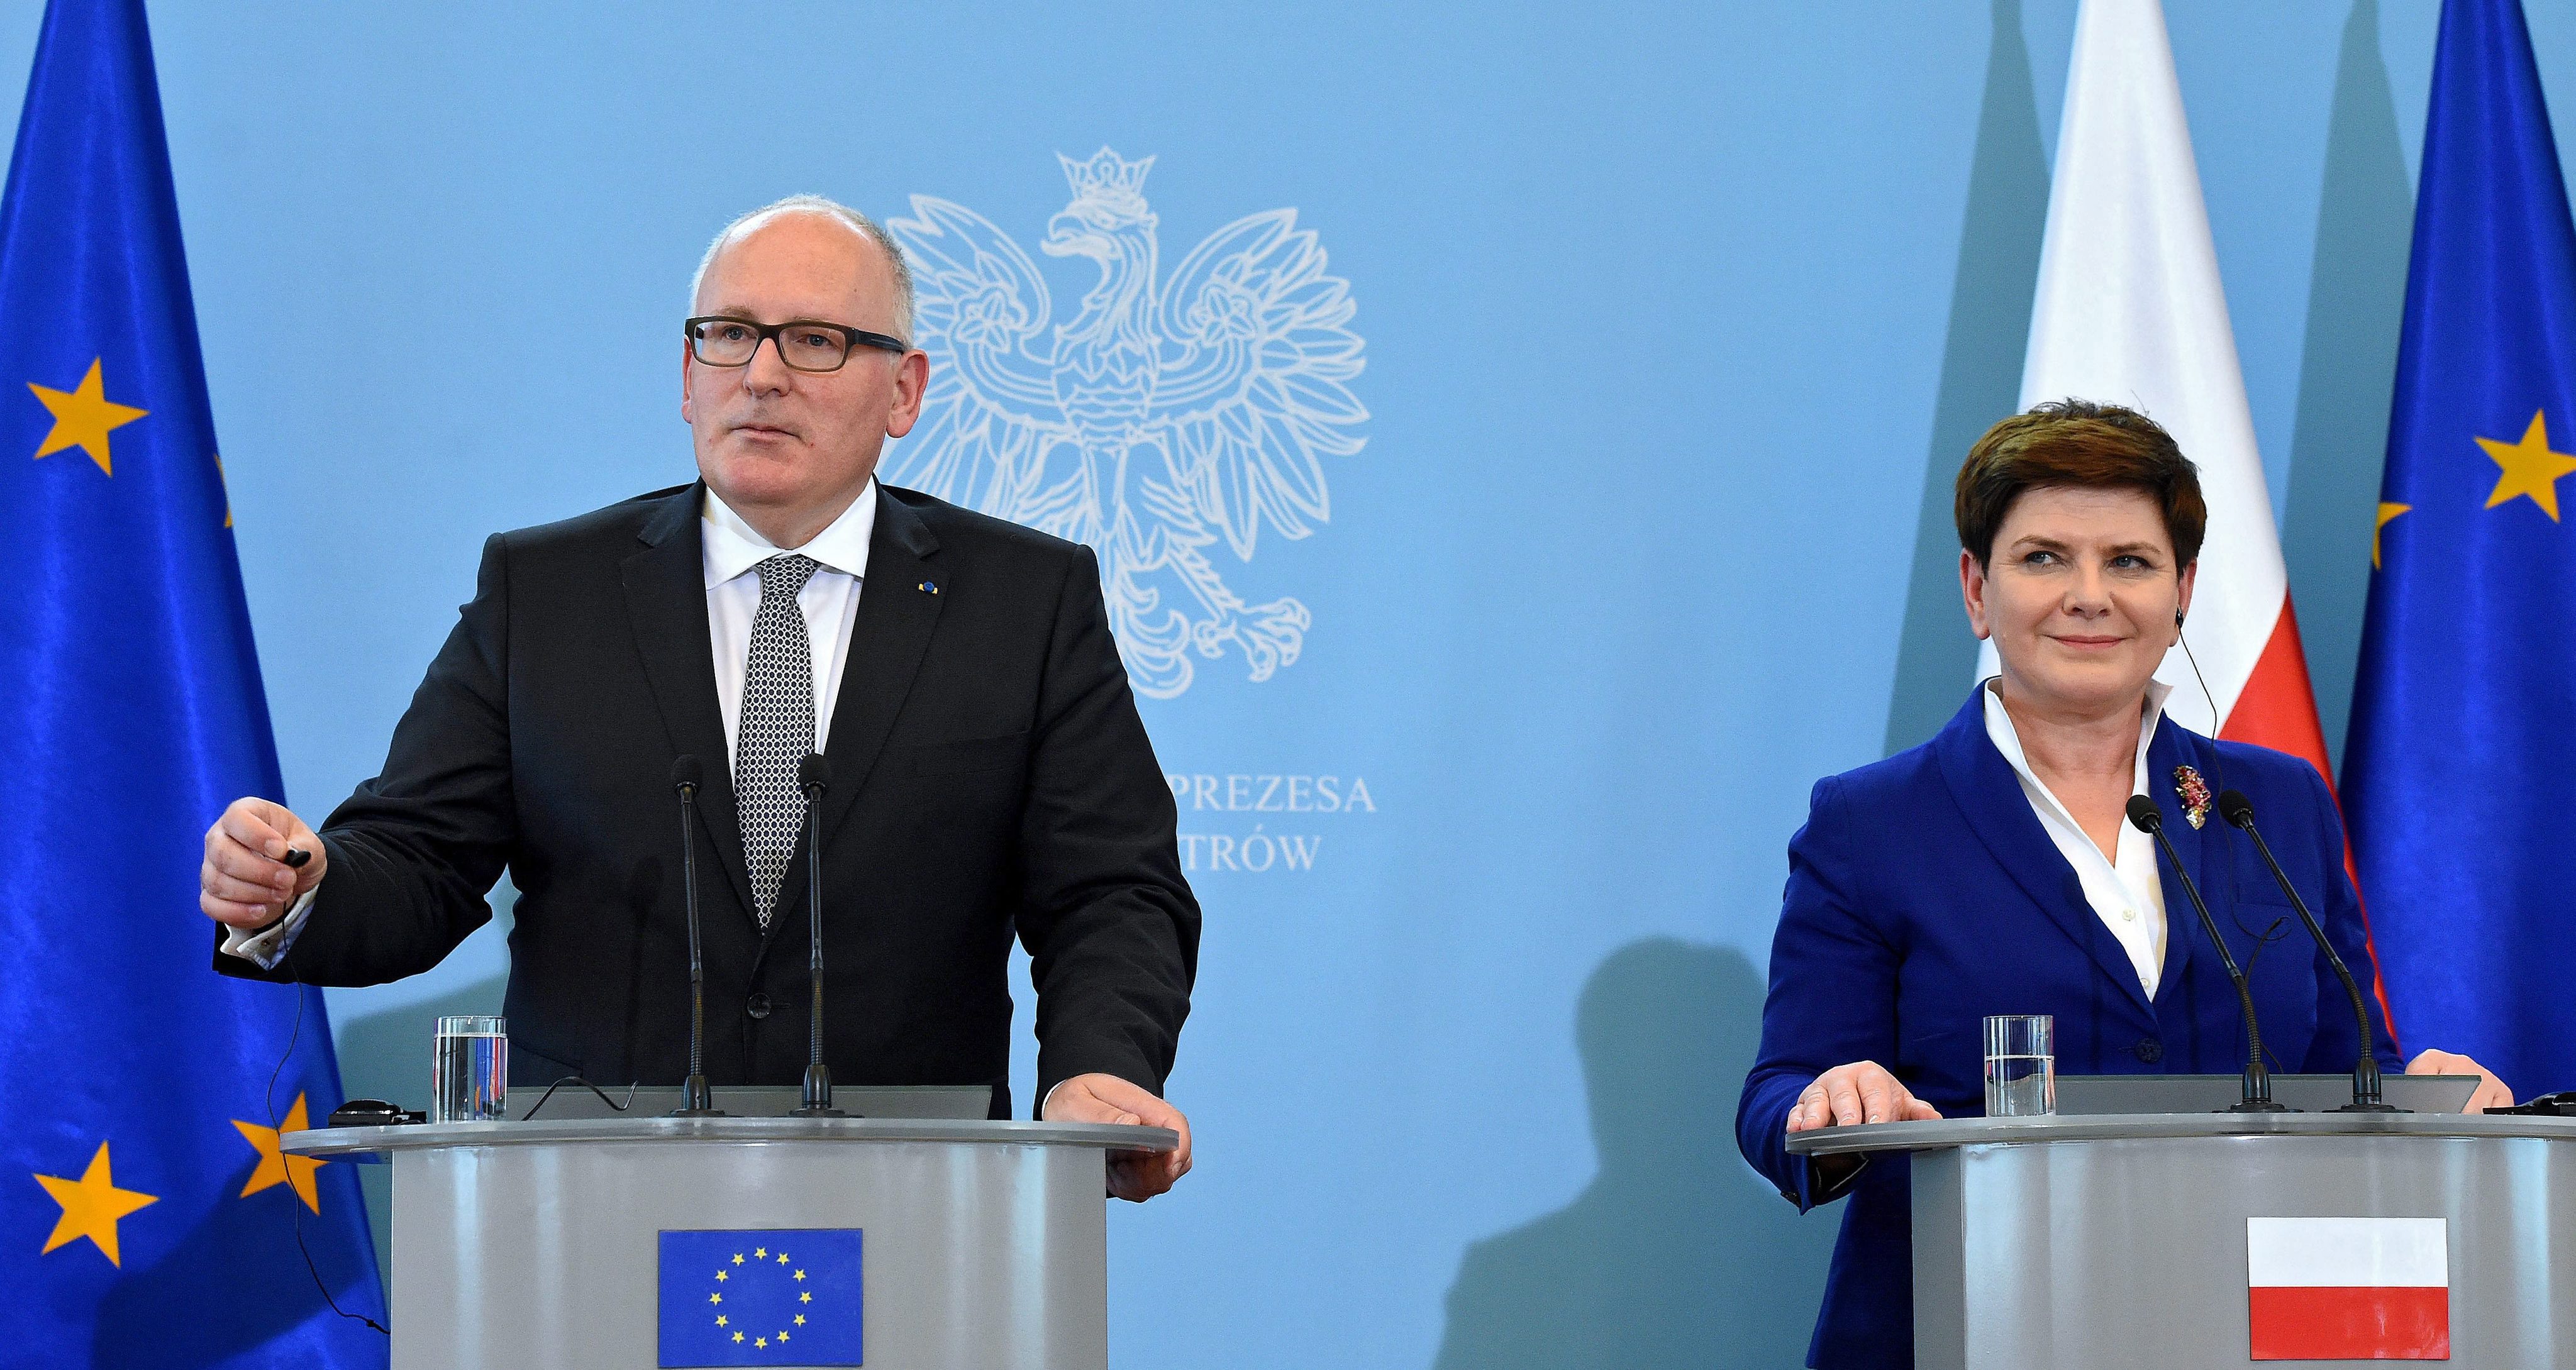 ΕΕ: Η συνταγματική κρίση της Πολωνίας να επιλυθεί εσωτερικά